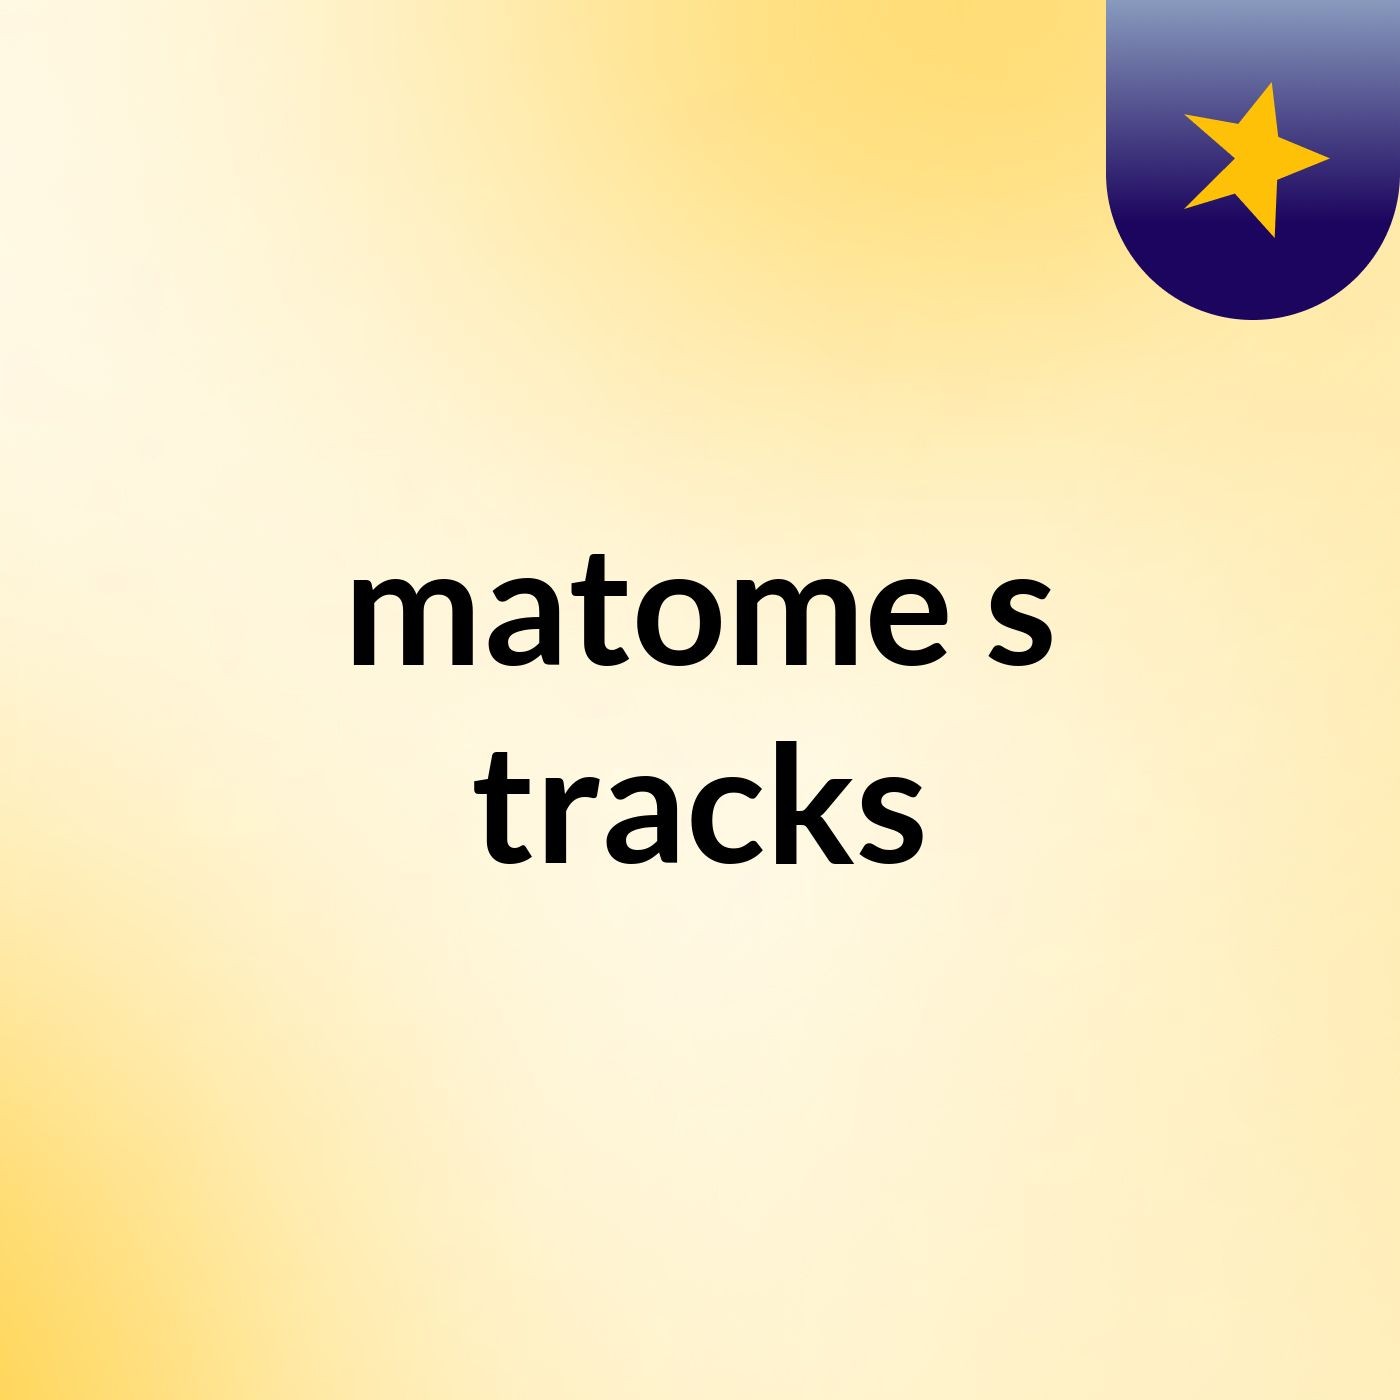 matome's tracks